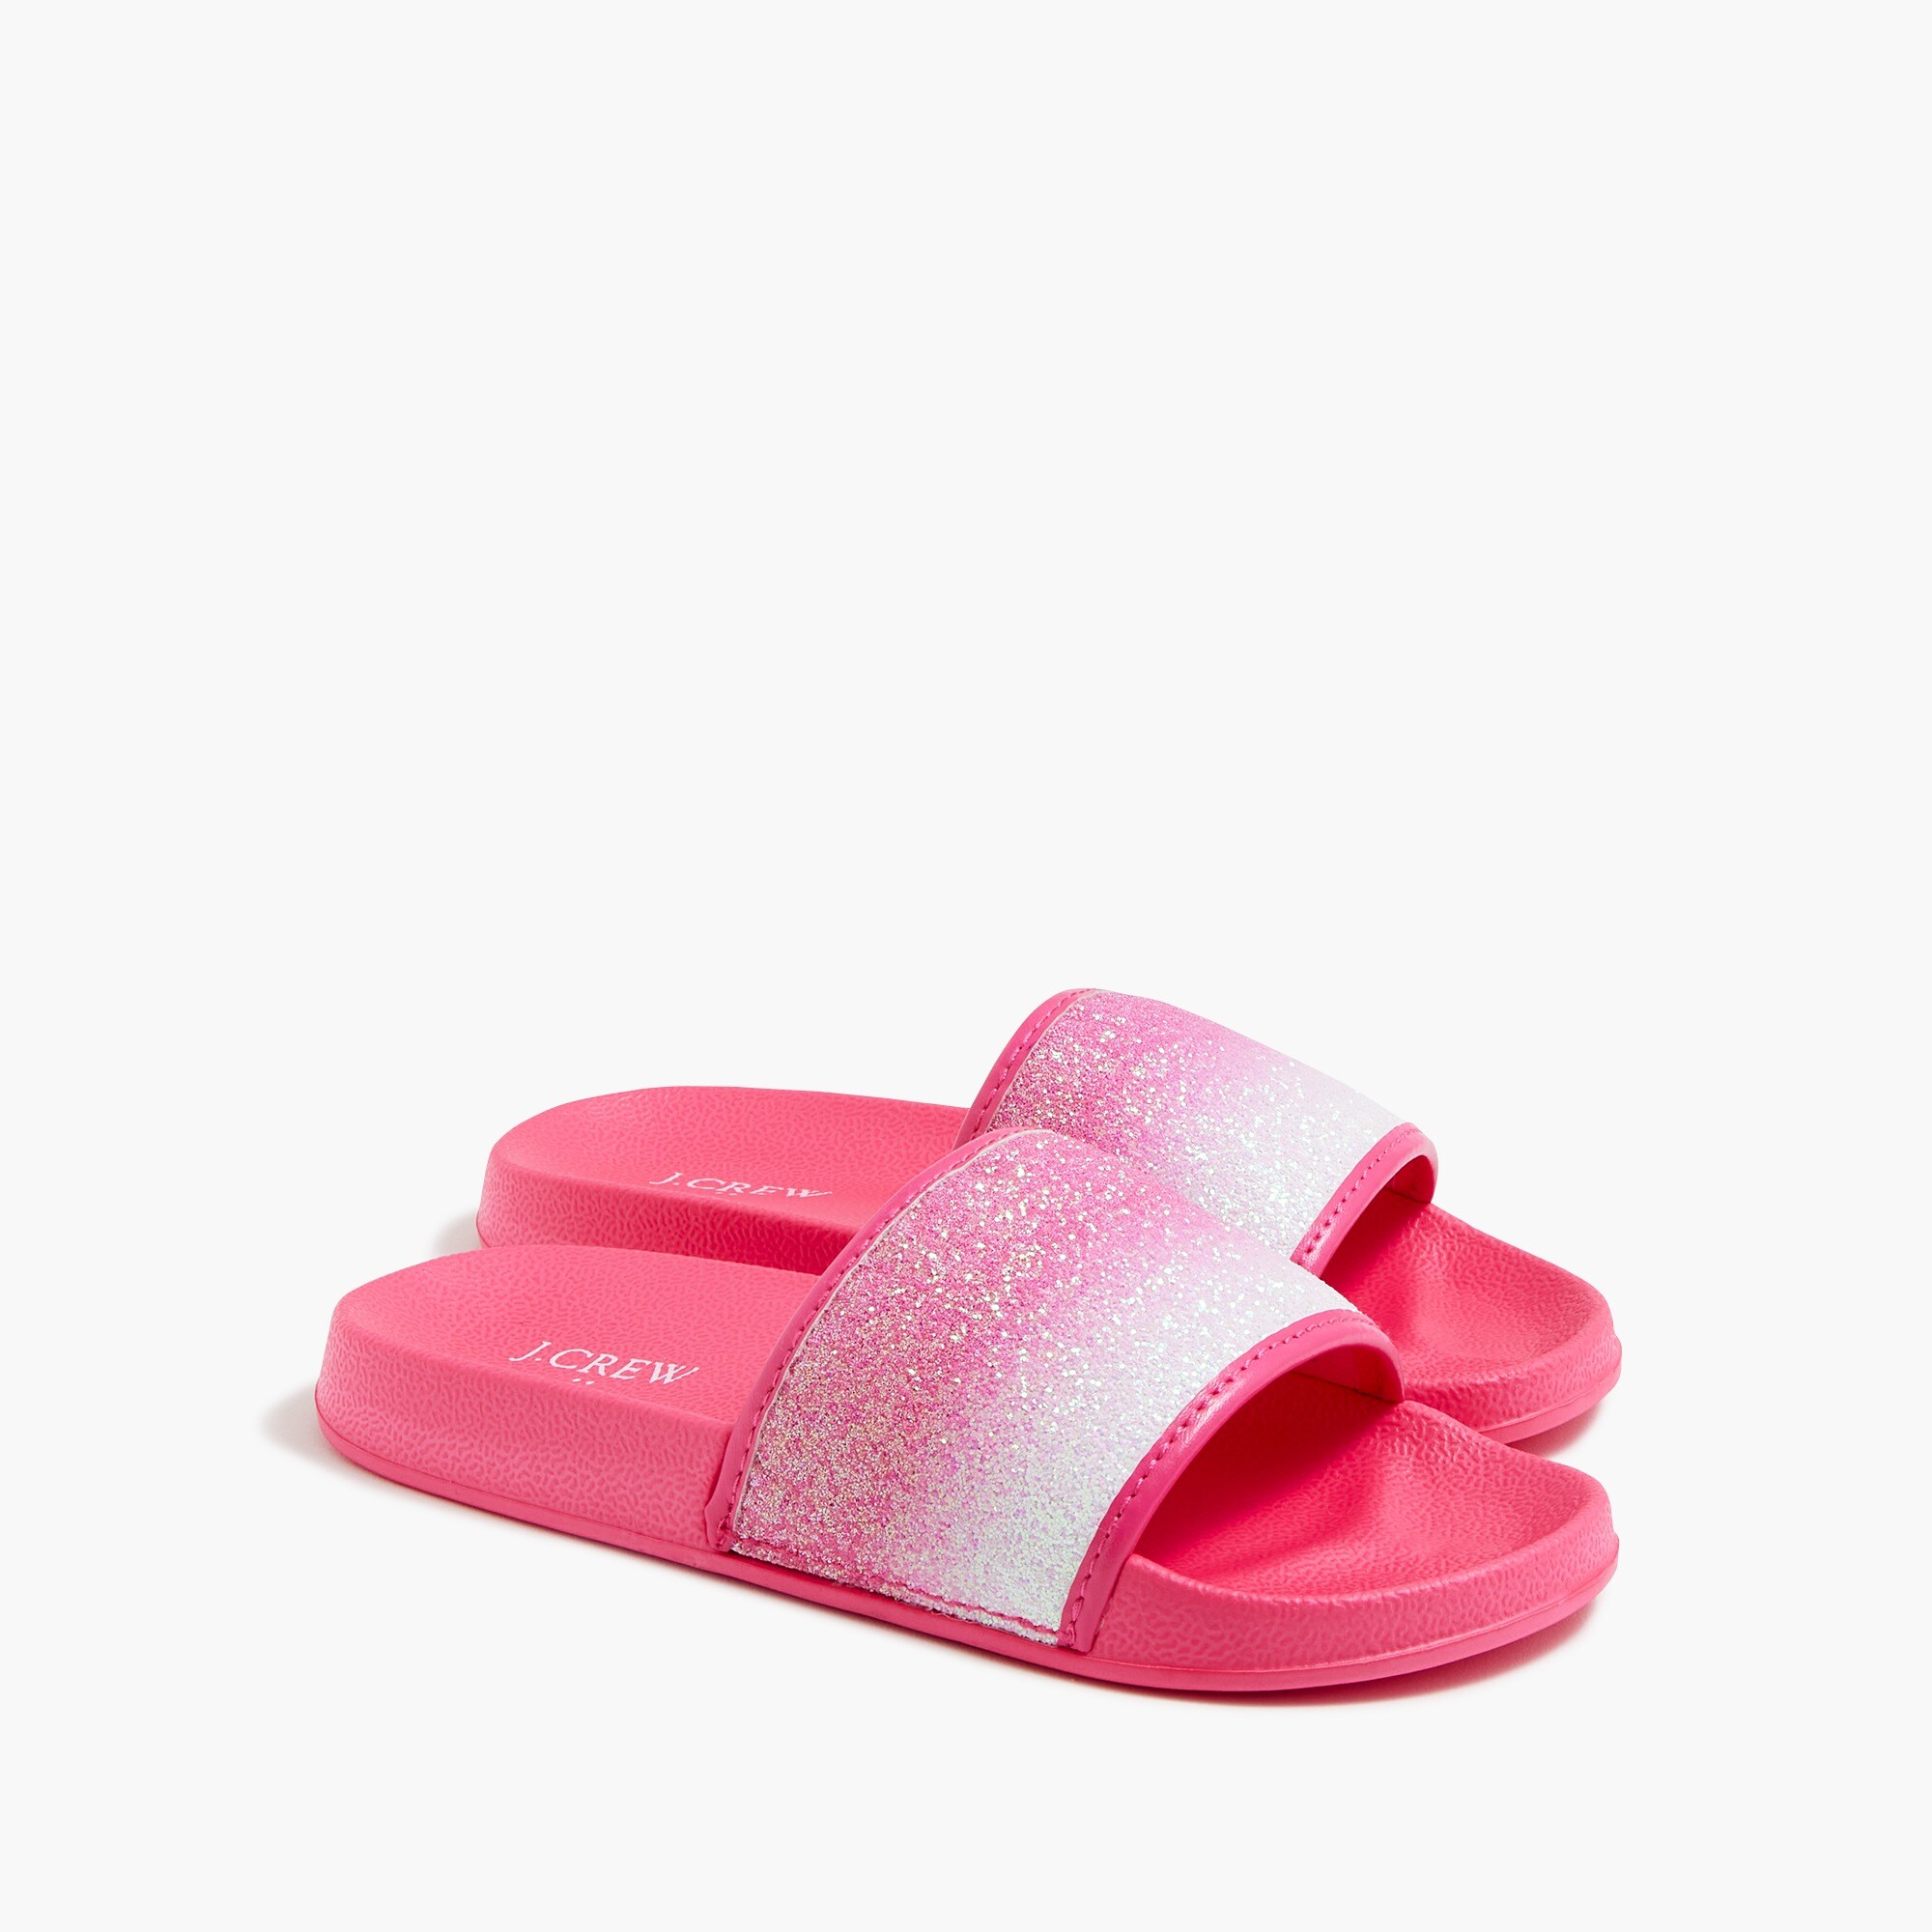 girls Girls' ombr&eacute; glitter slide sandals